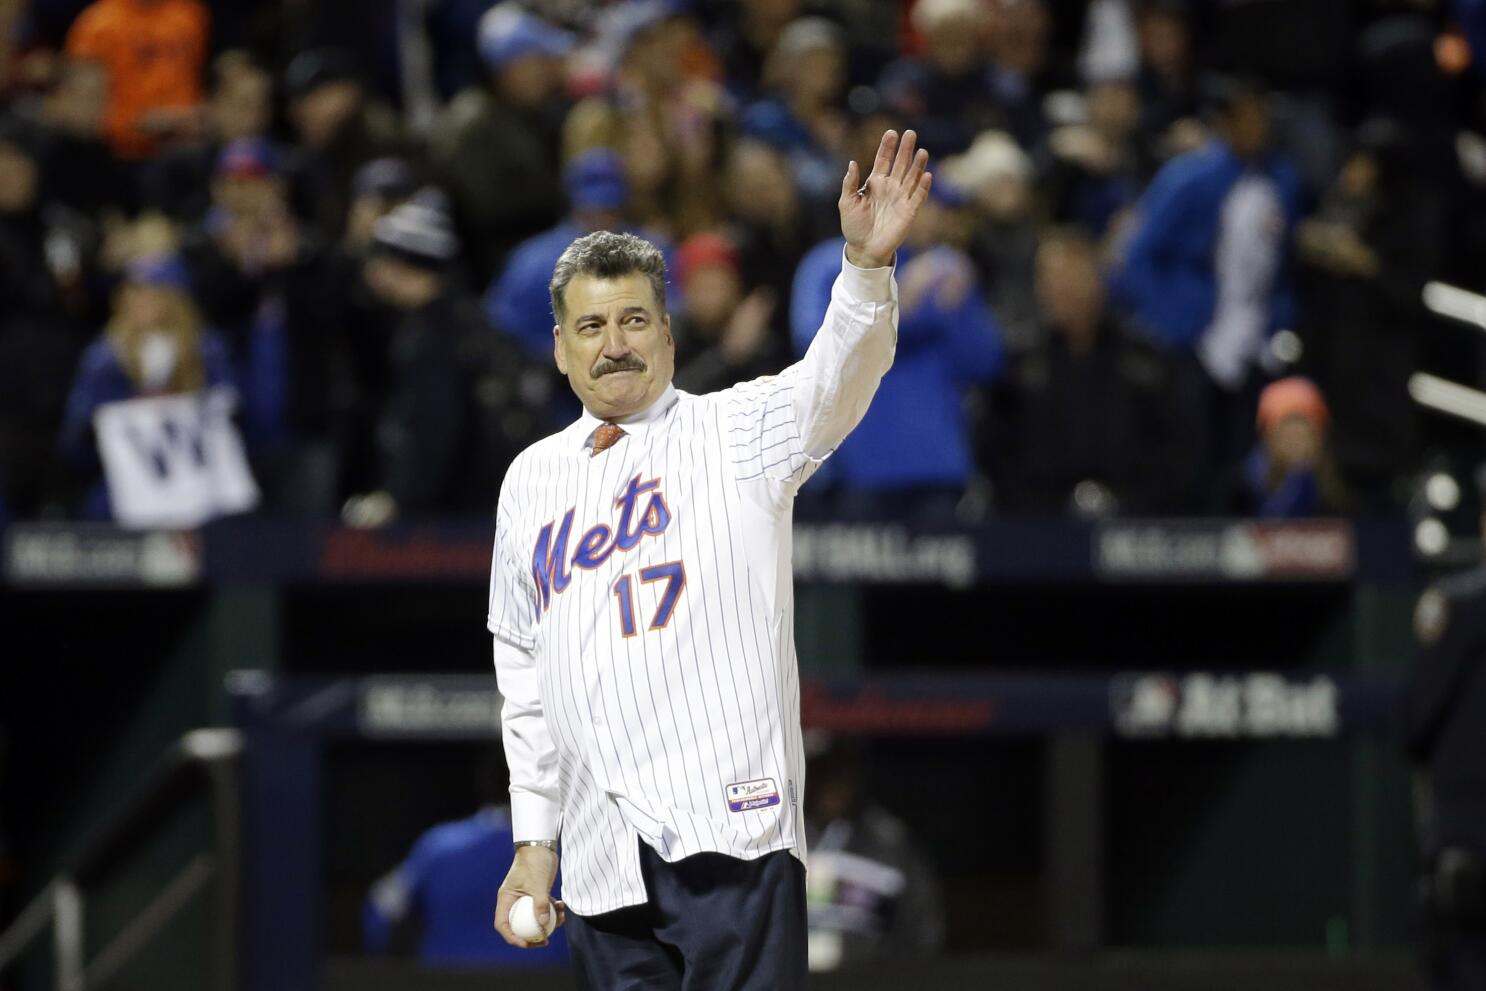 Mets to retire Keith Hernandez's number 17 in July